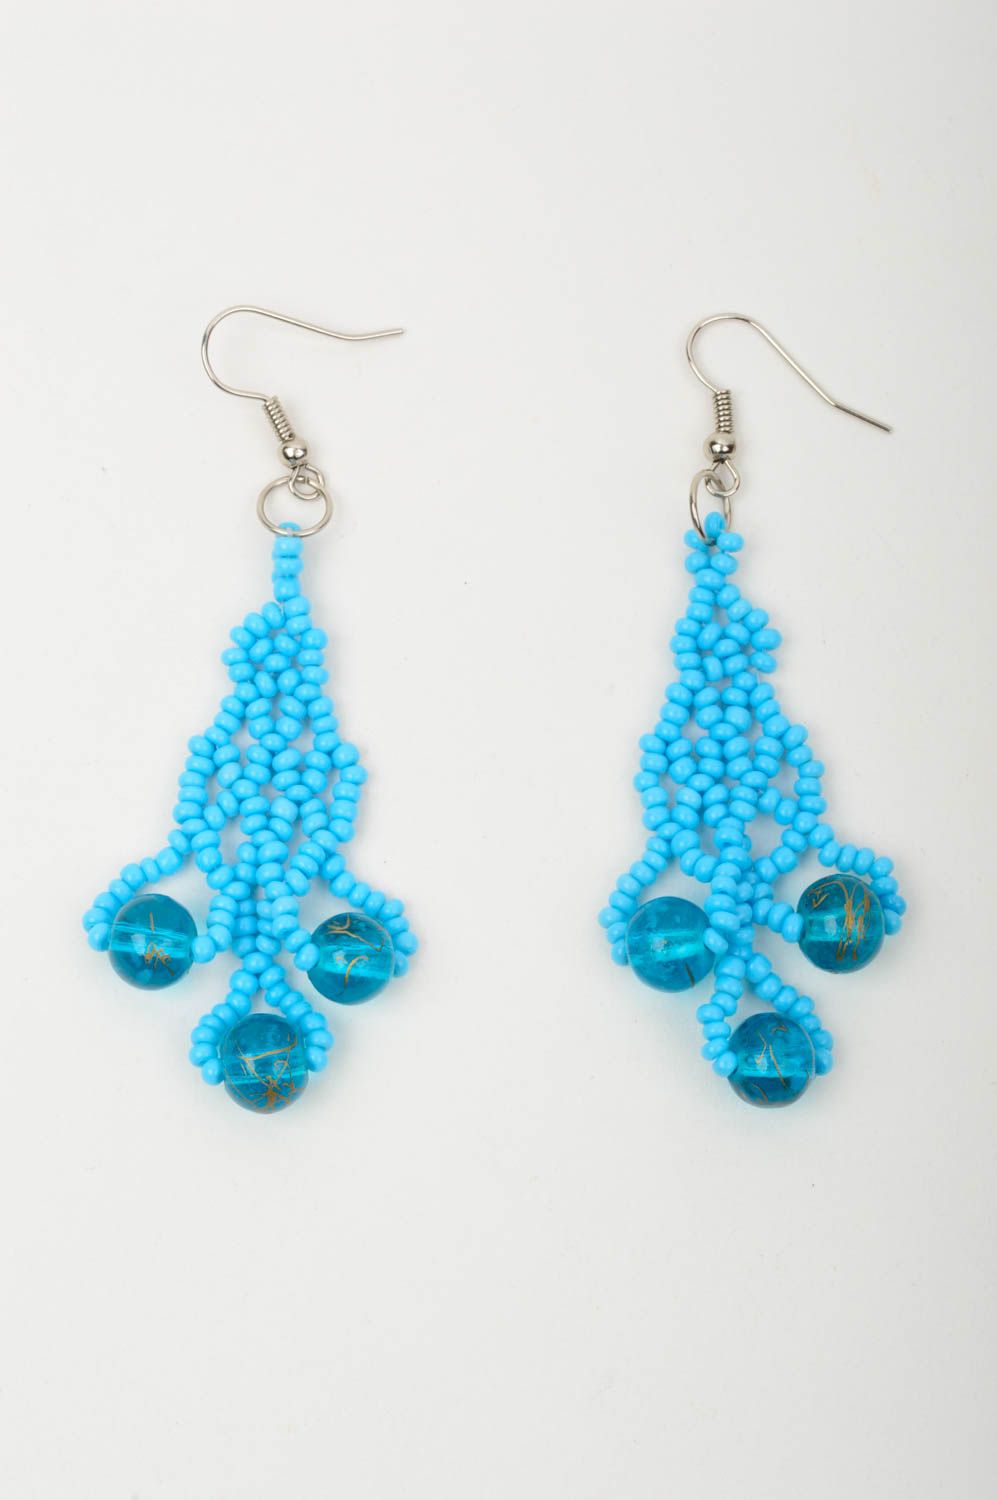 Handmade earrings designer earrings beaded earrings for women gift ideas photo 3